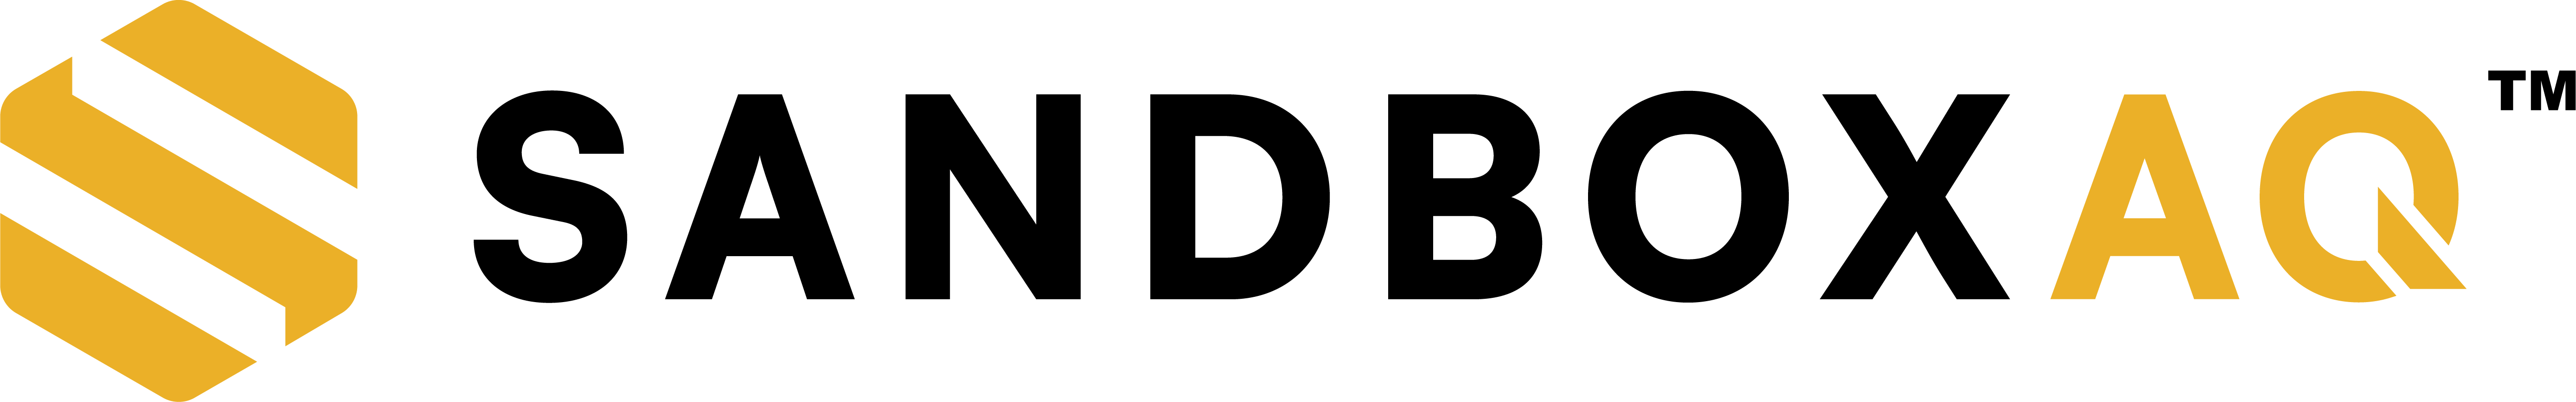 SandboxAQ-Logo-Accent-Color-Black-TM